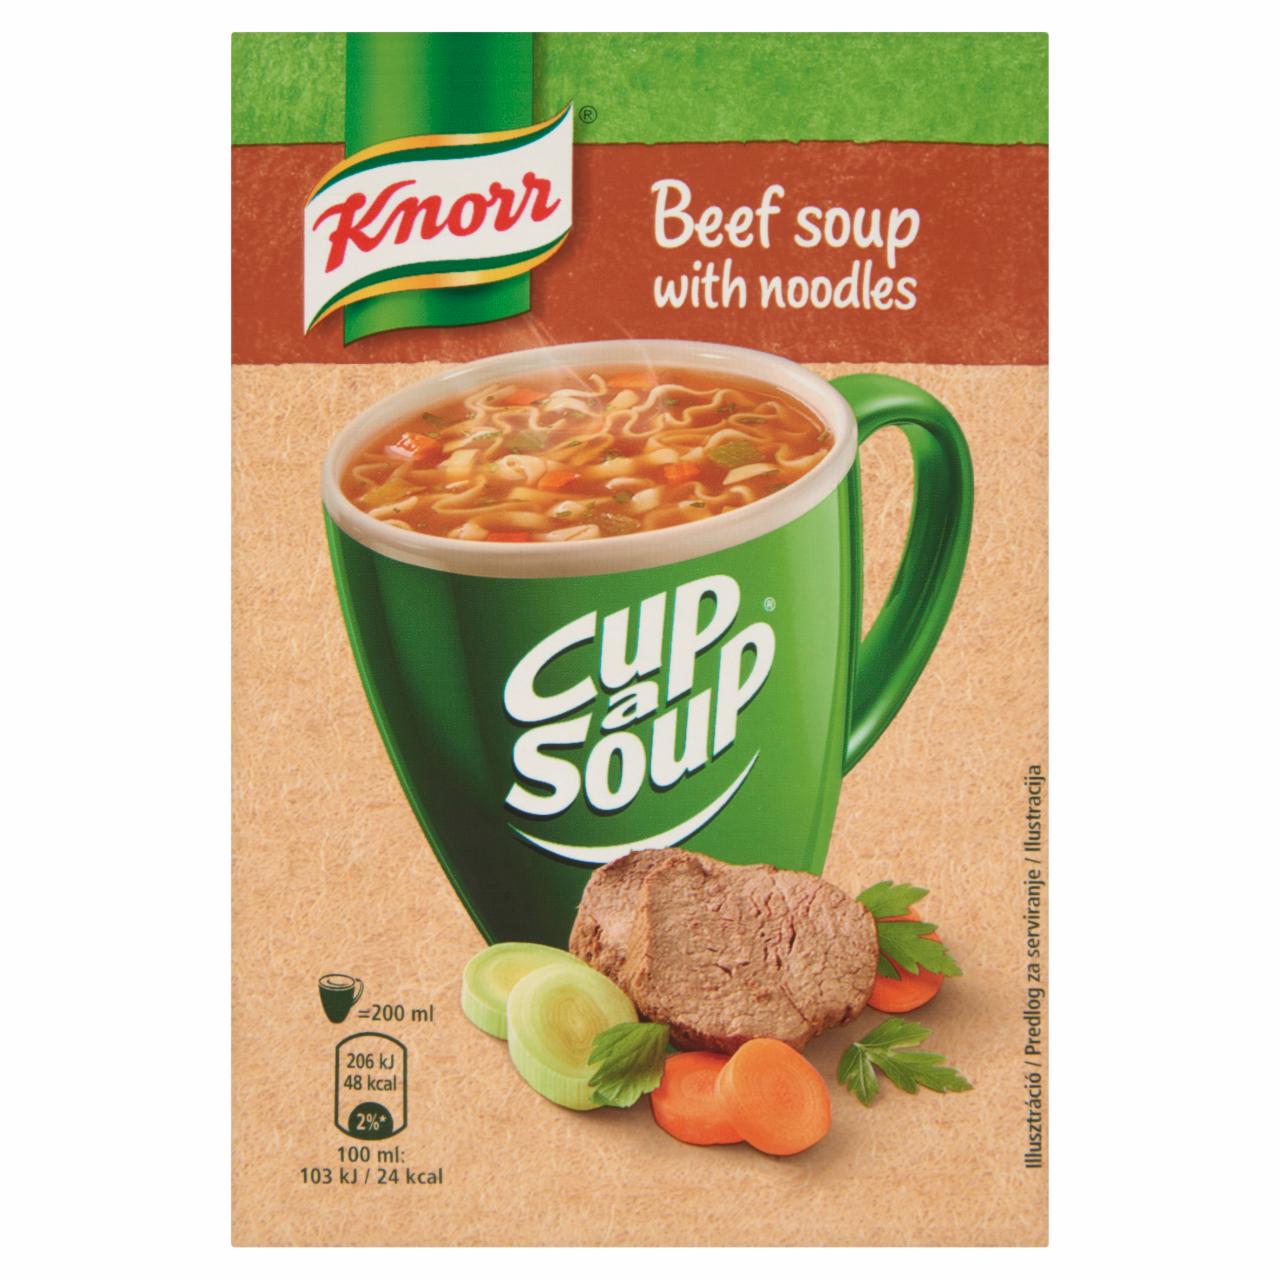 Képek - Knorr Cup a Soup marhahúsleves tésztával 13 g